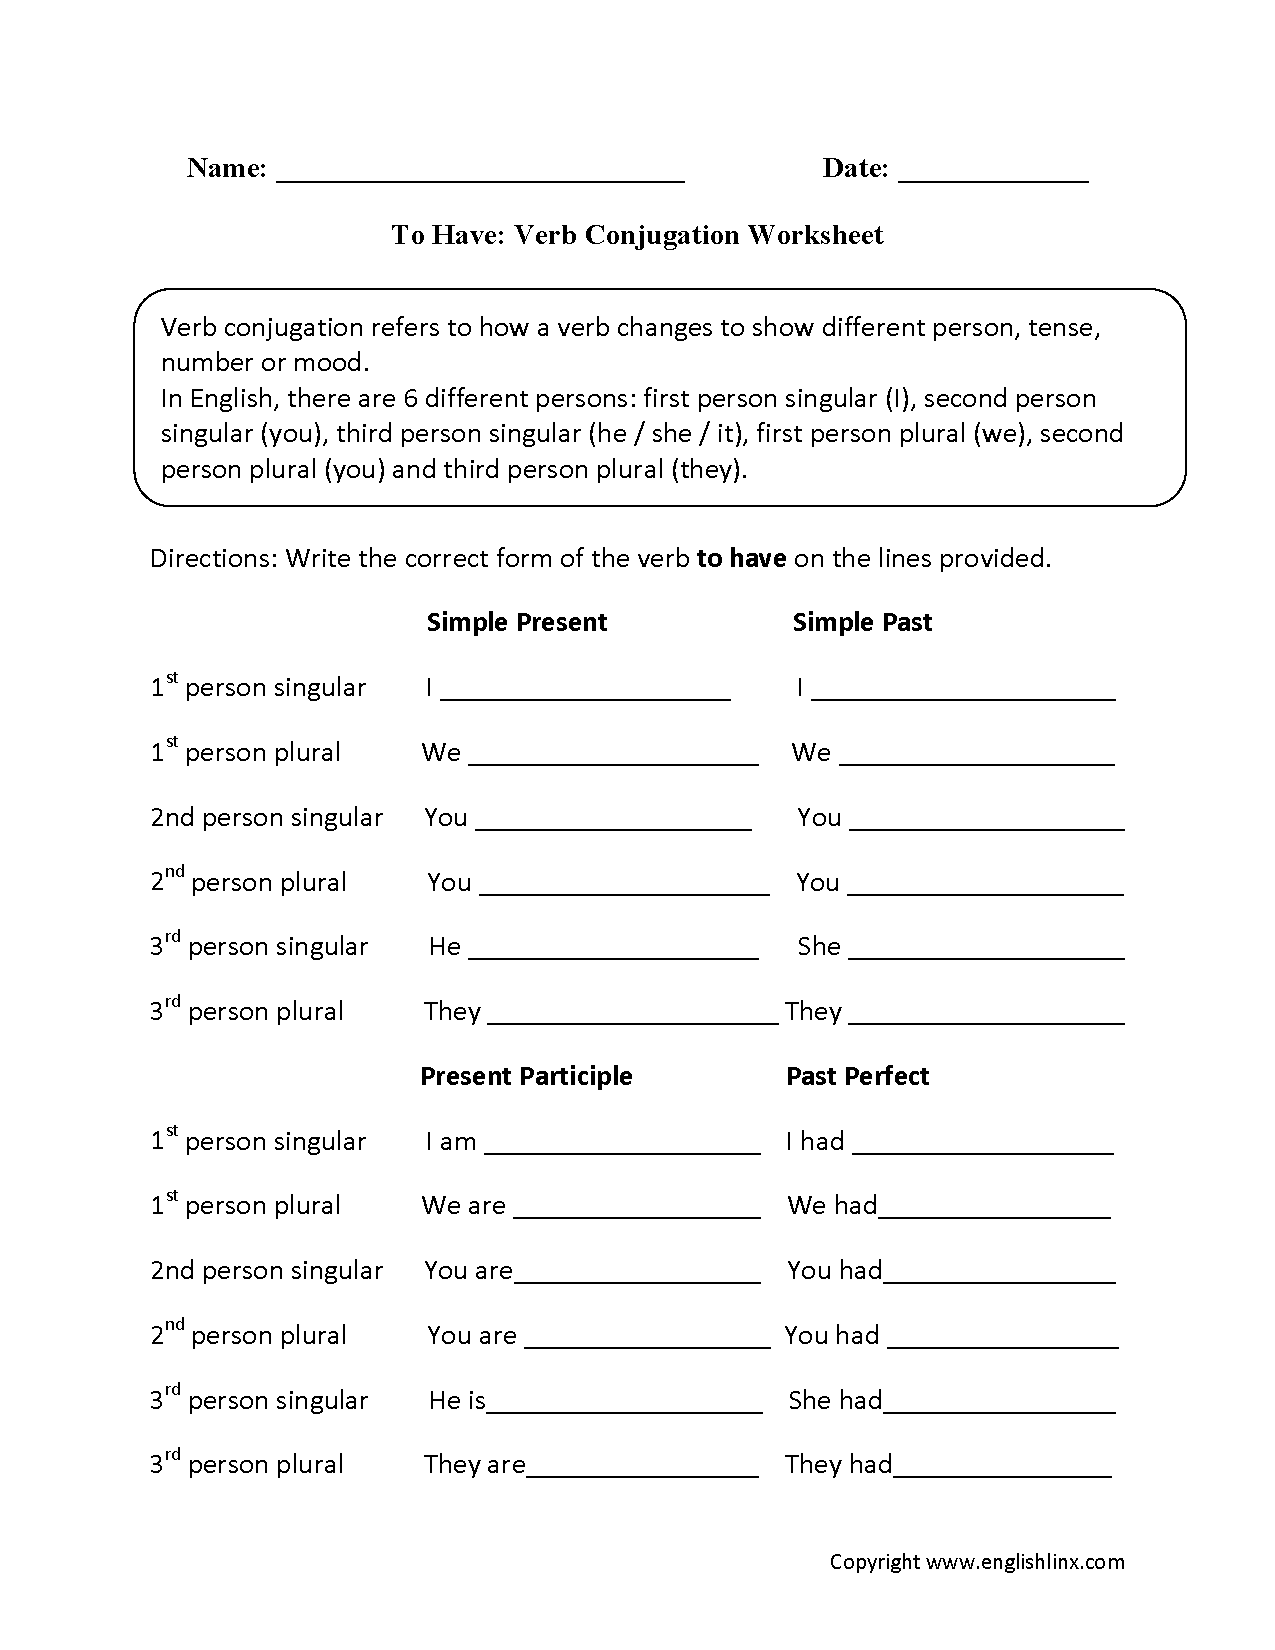 To Have Verb Conjugation Worksheets